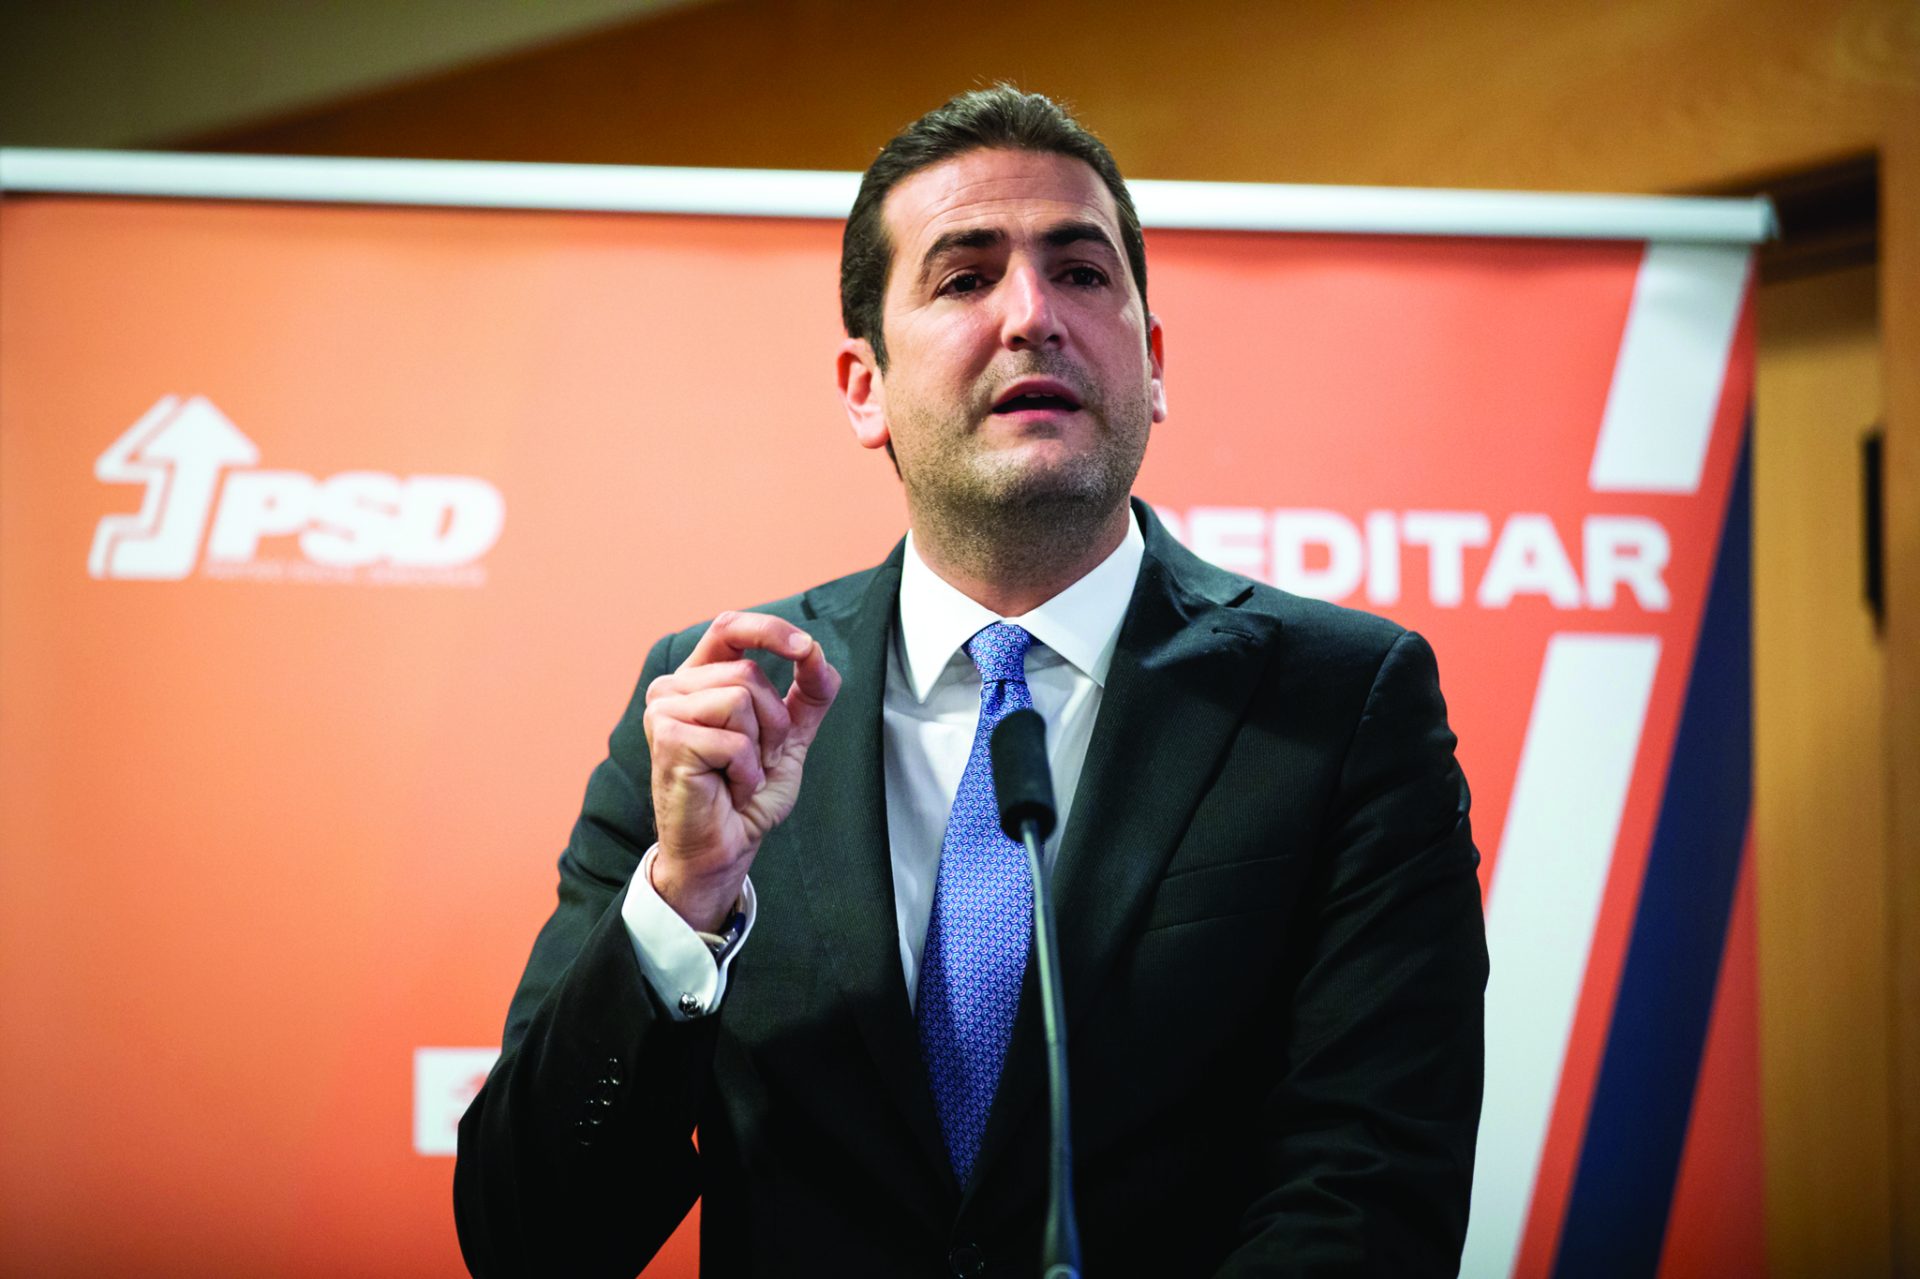 Hugo Soares diz que PS está a tentar”reescrever a história dos últimos 60 dias” no Parlamento